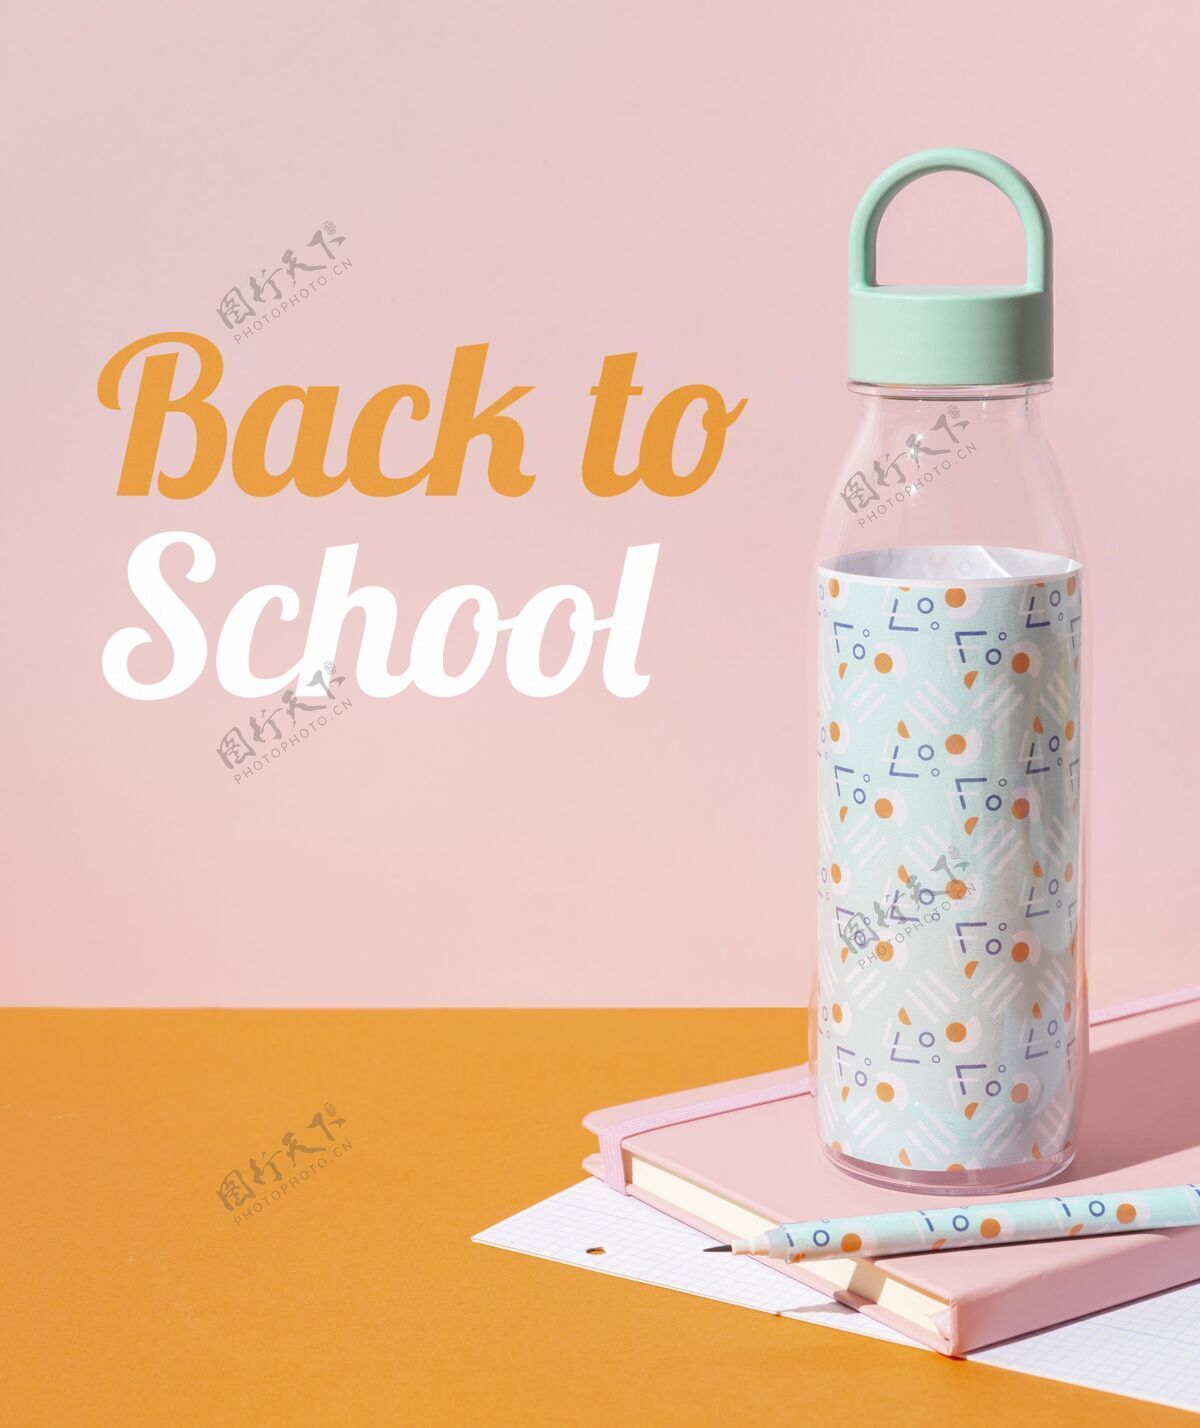 学习带着水瓶回学校安排返校教育